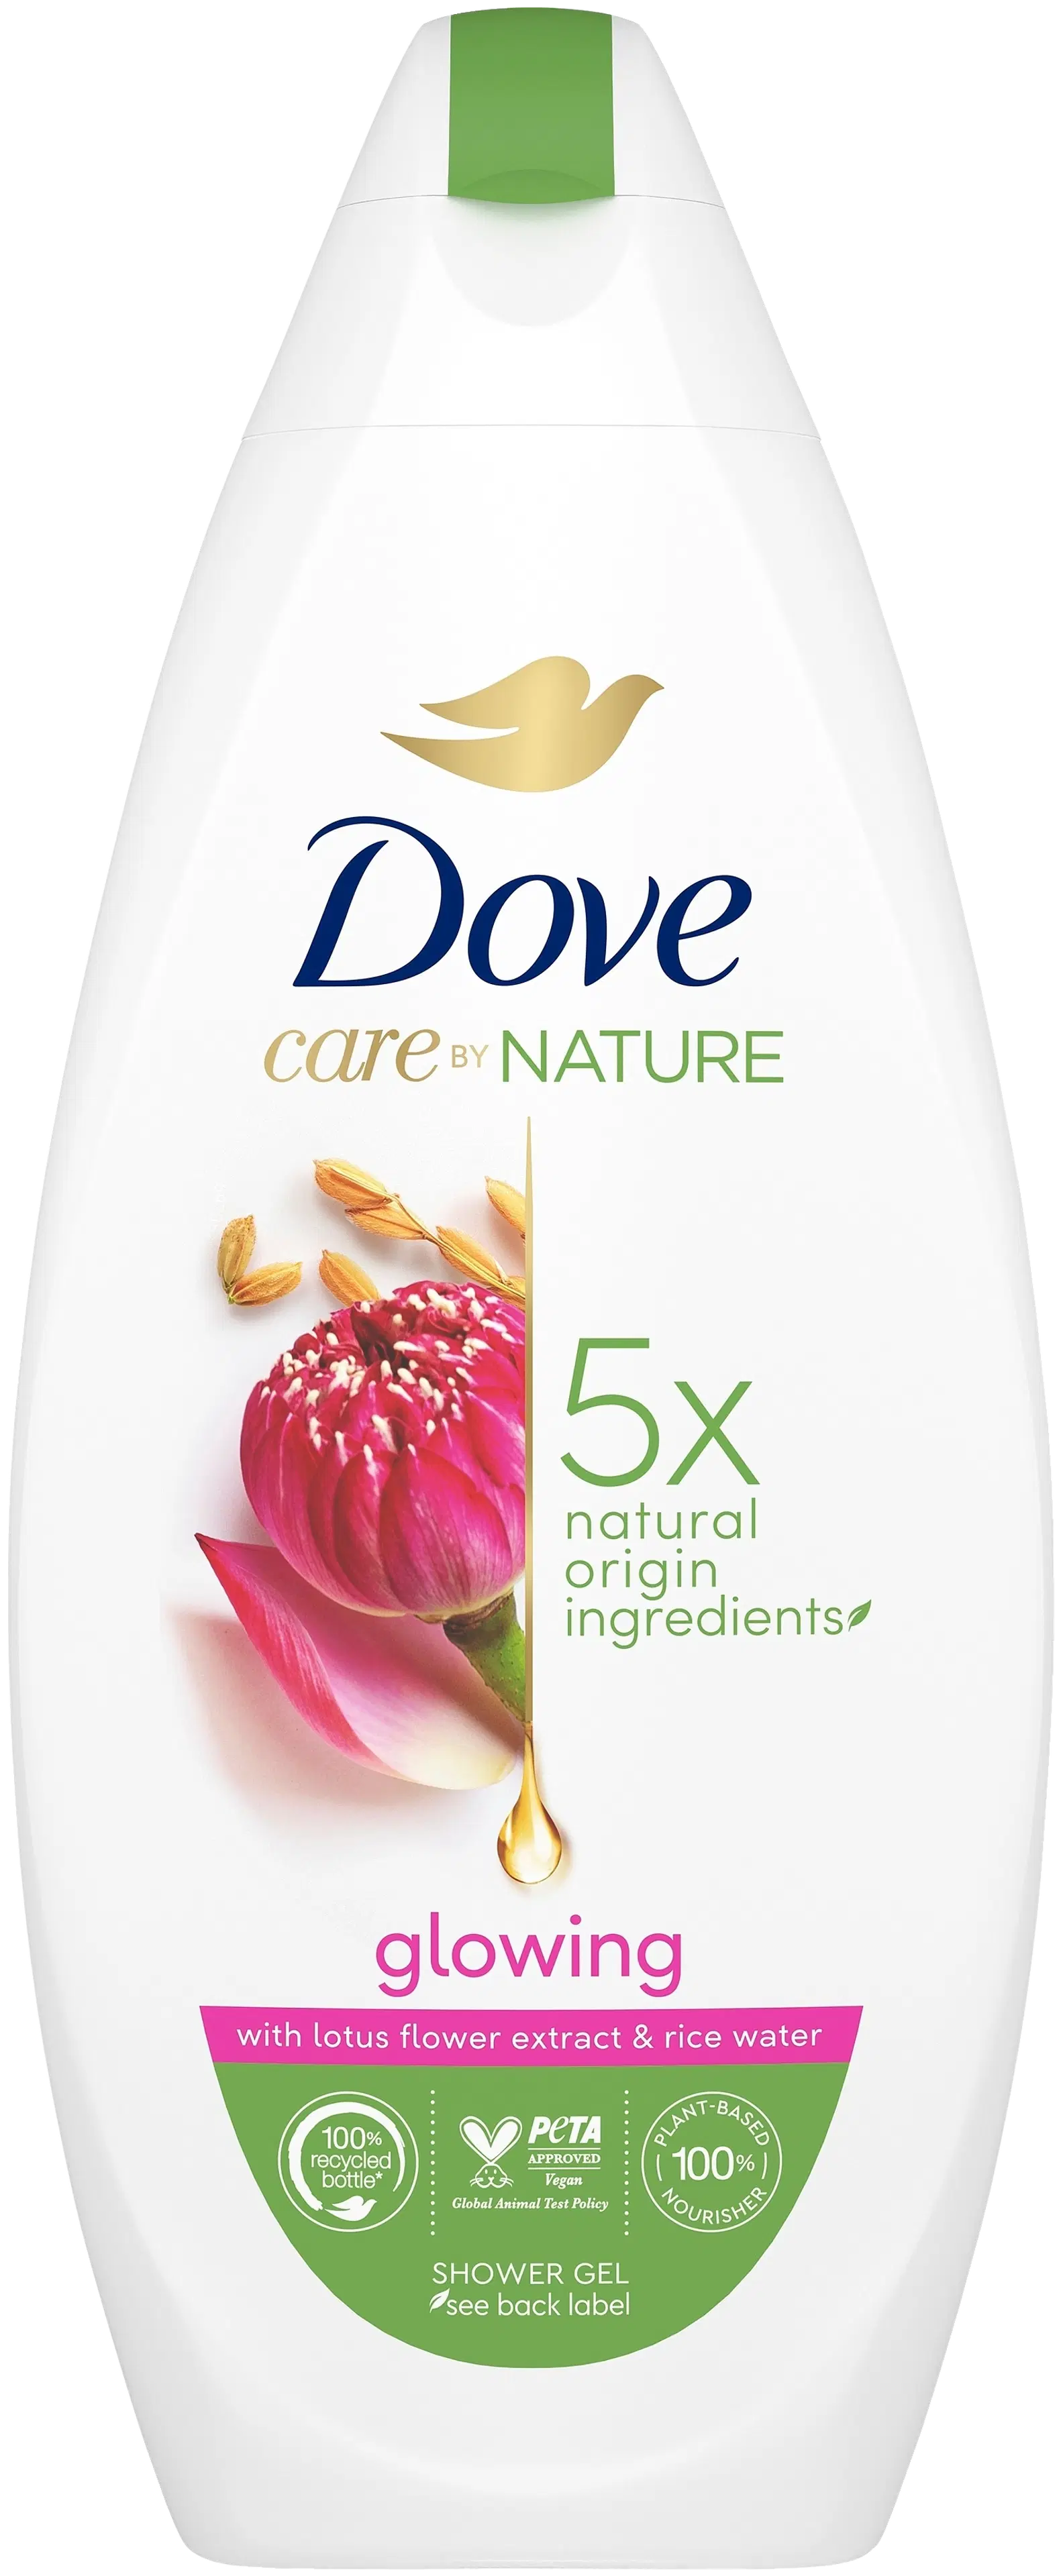 Dove Care By Nature Glowing Suihkusaippua  lootuskukkauutteen ja riisiveden tuoksu   225 ml